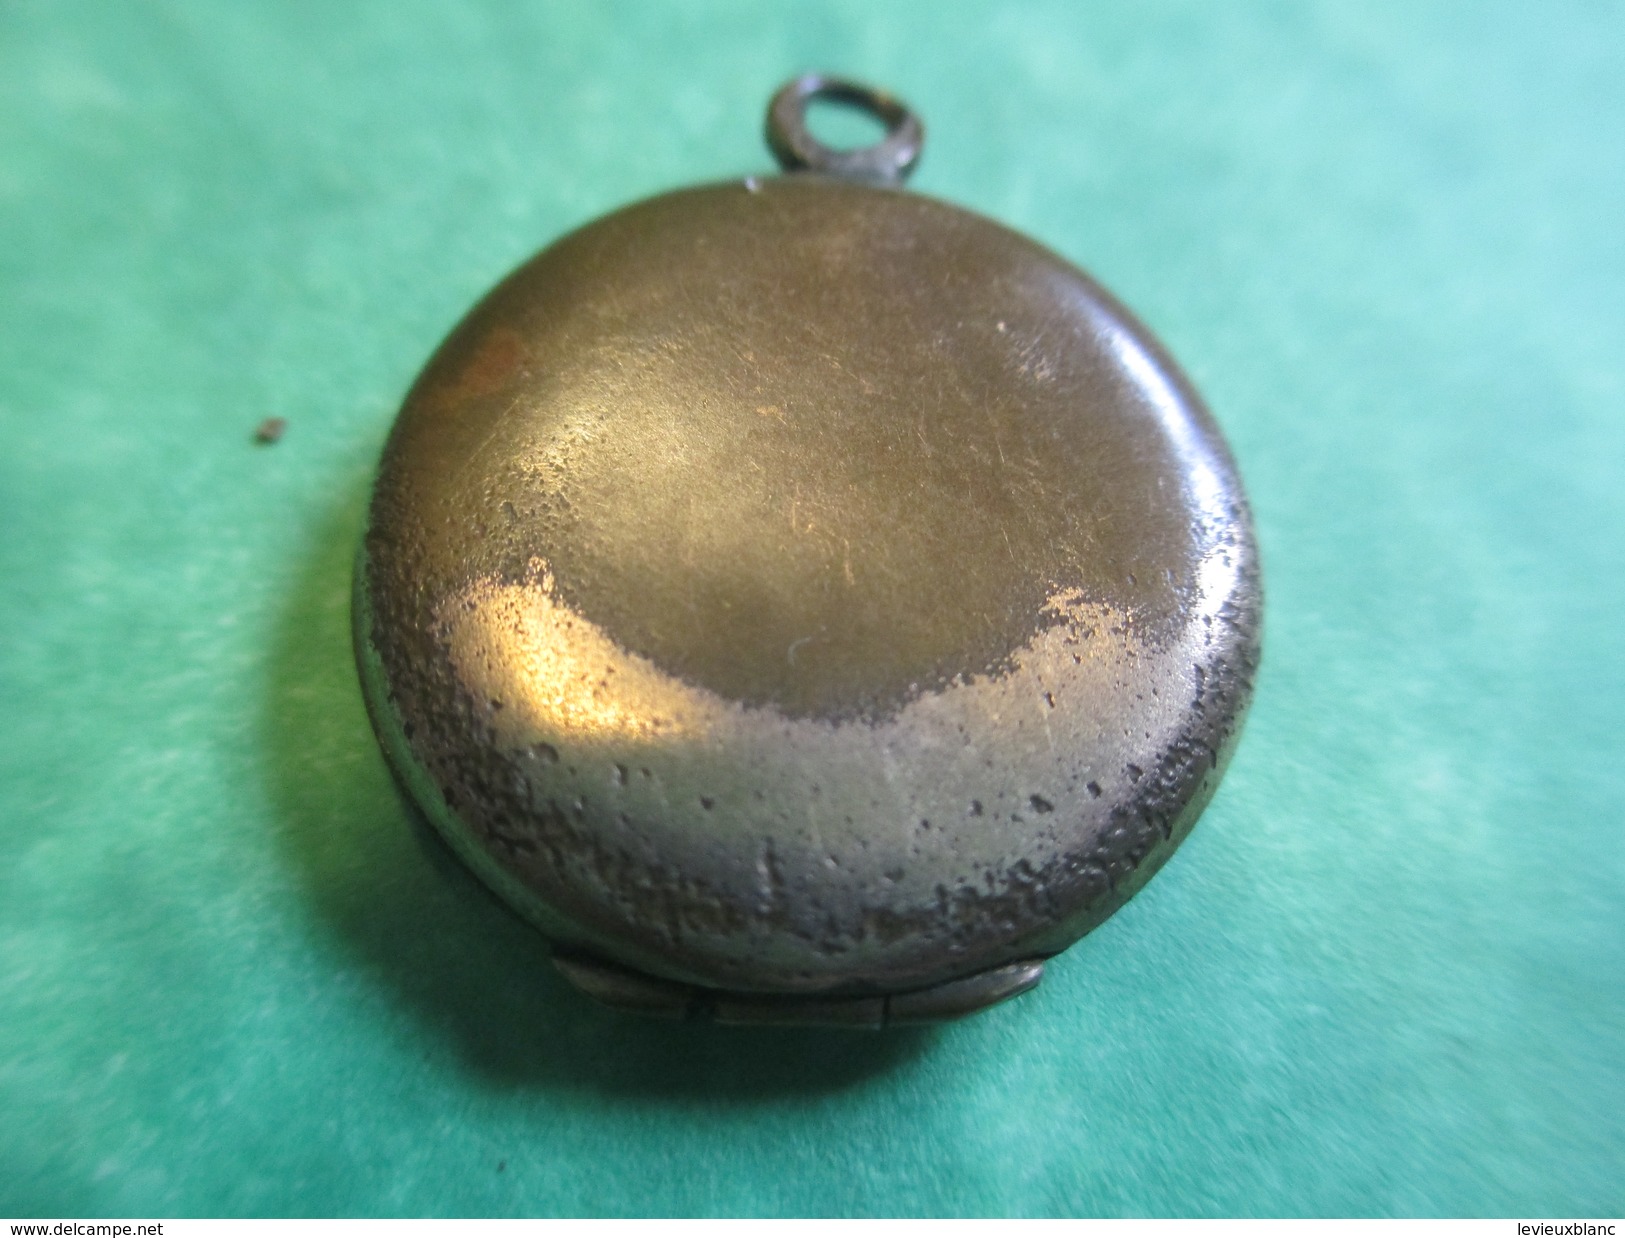 Bijou Fantaisie Ancien/Médaille/2 Photos à L'Intérieur/Pendentif Gousset Plaqué Or Pour Chaînette/ Vers 1914-18  BIJ28 - Pendants